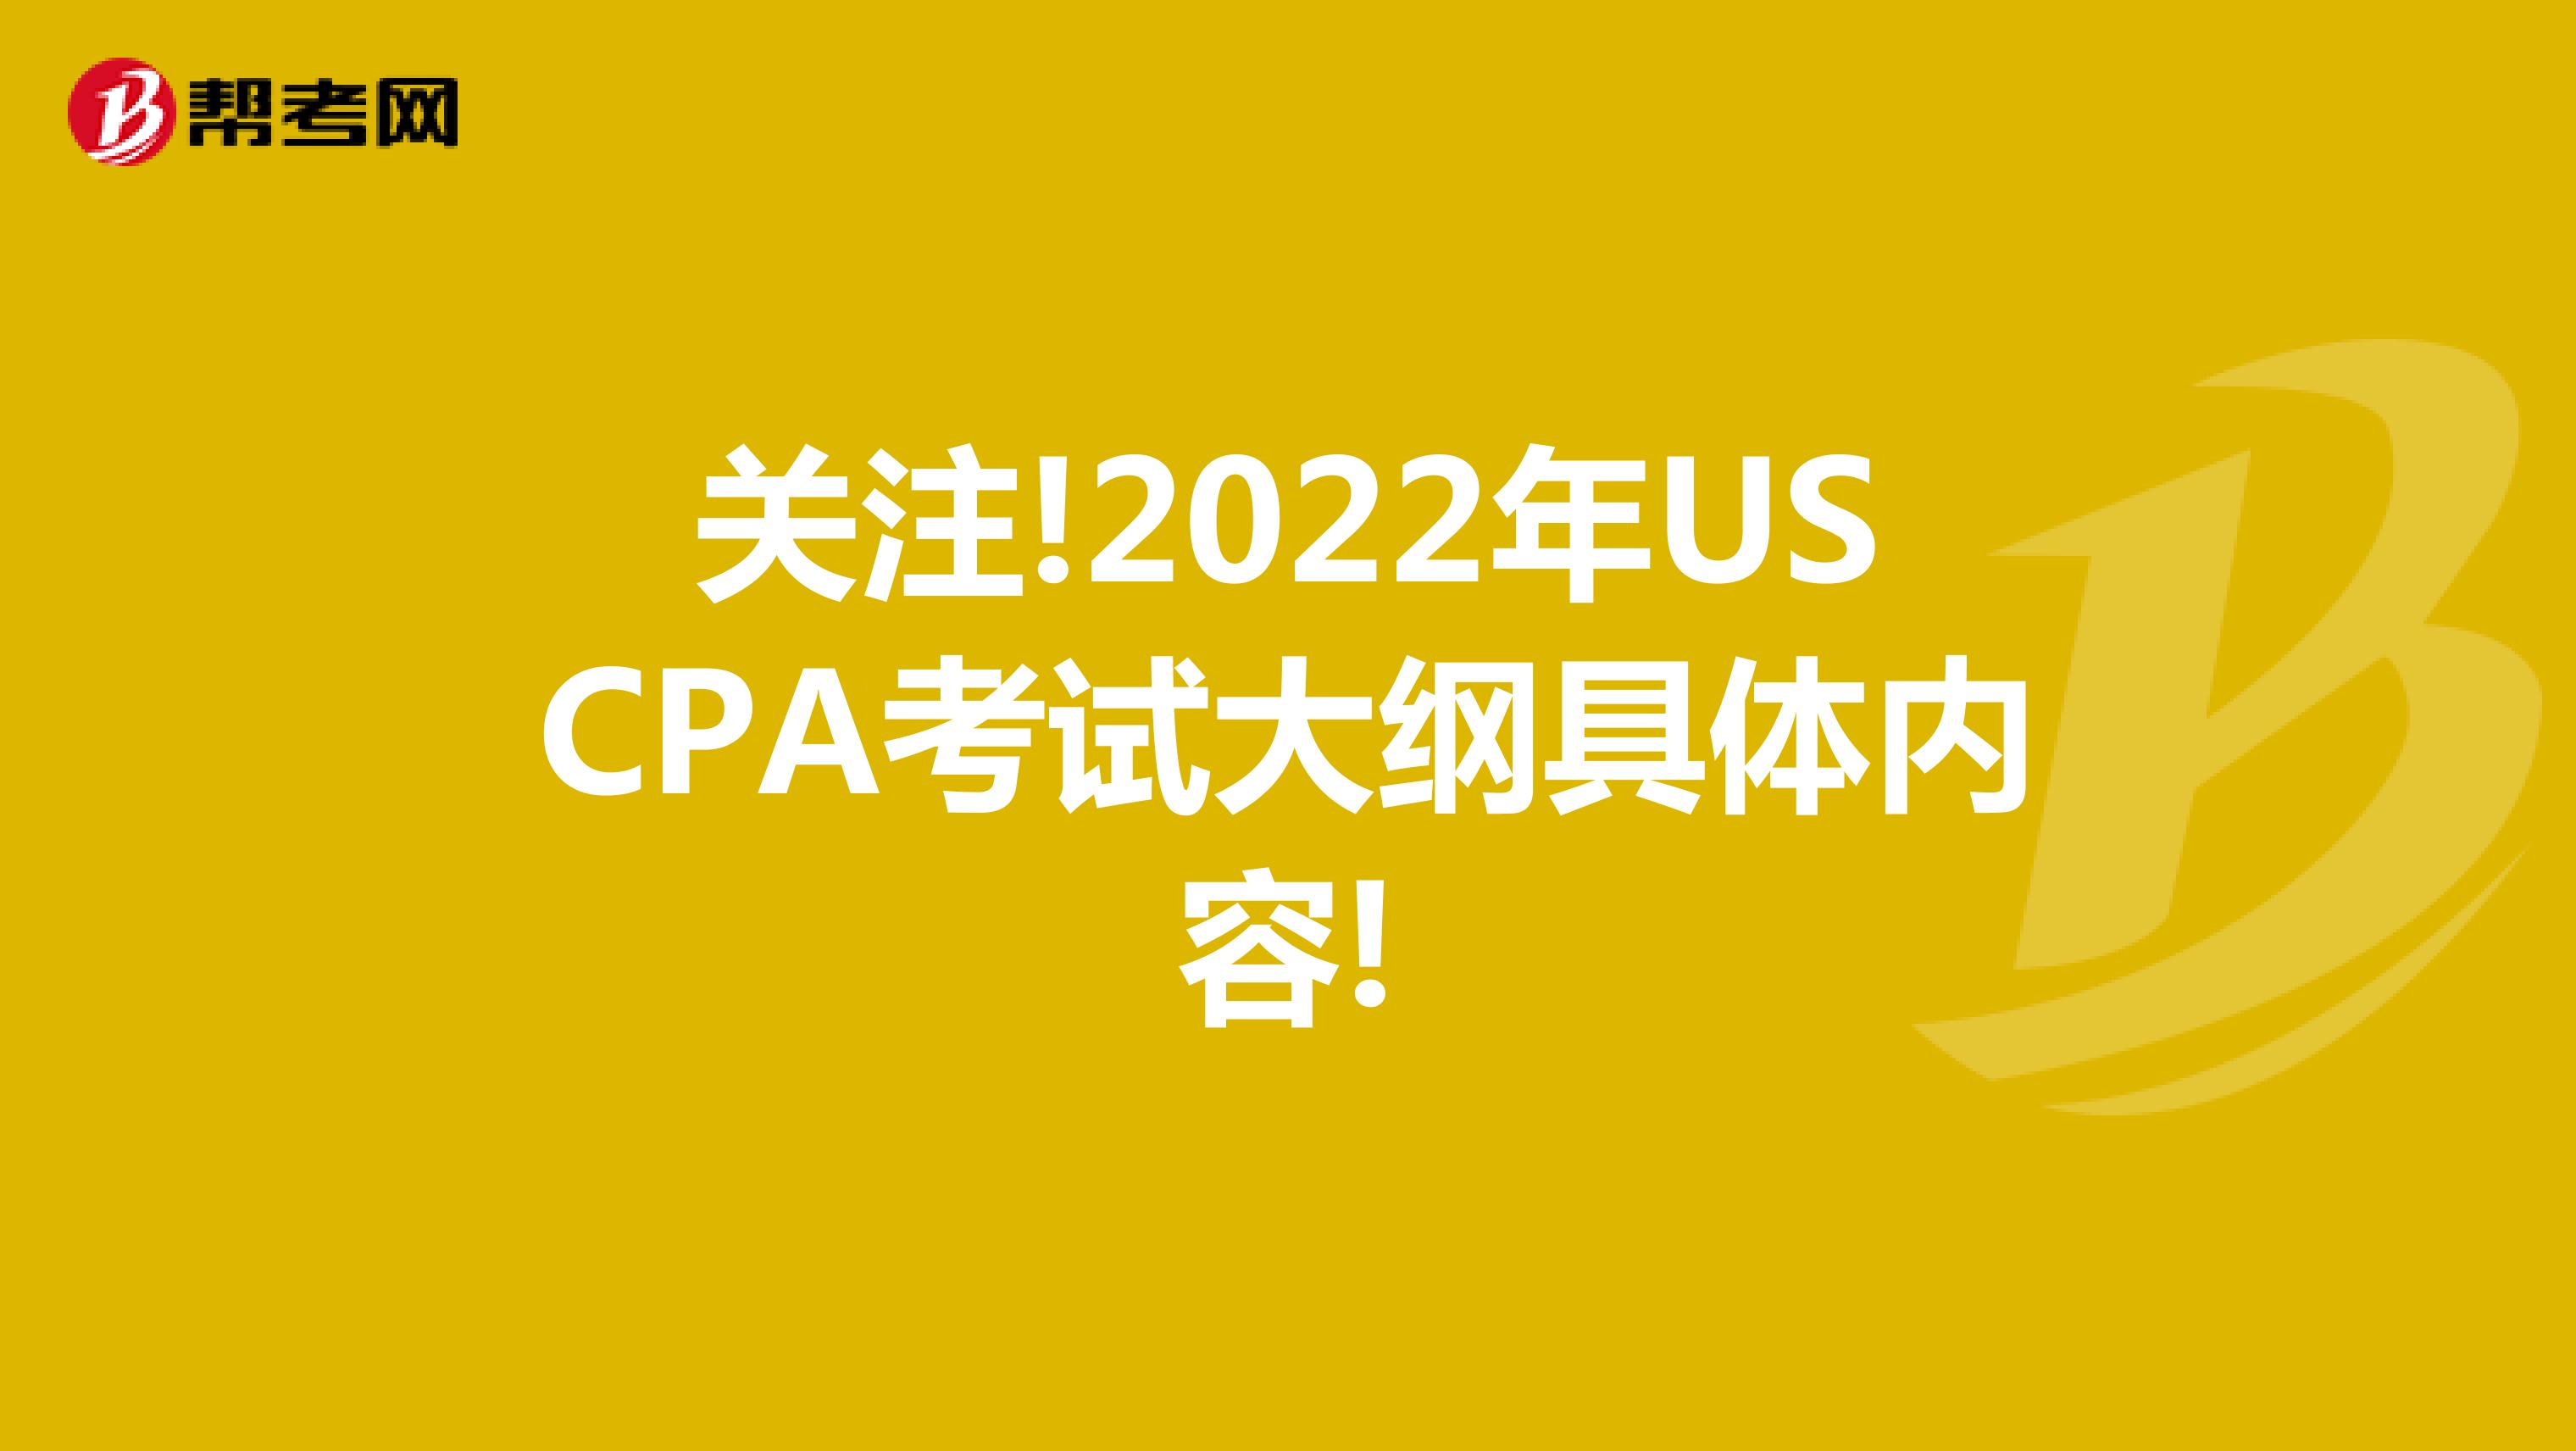 关注!2022年USCPA考试大纲具体内容!